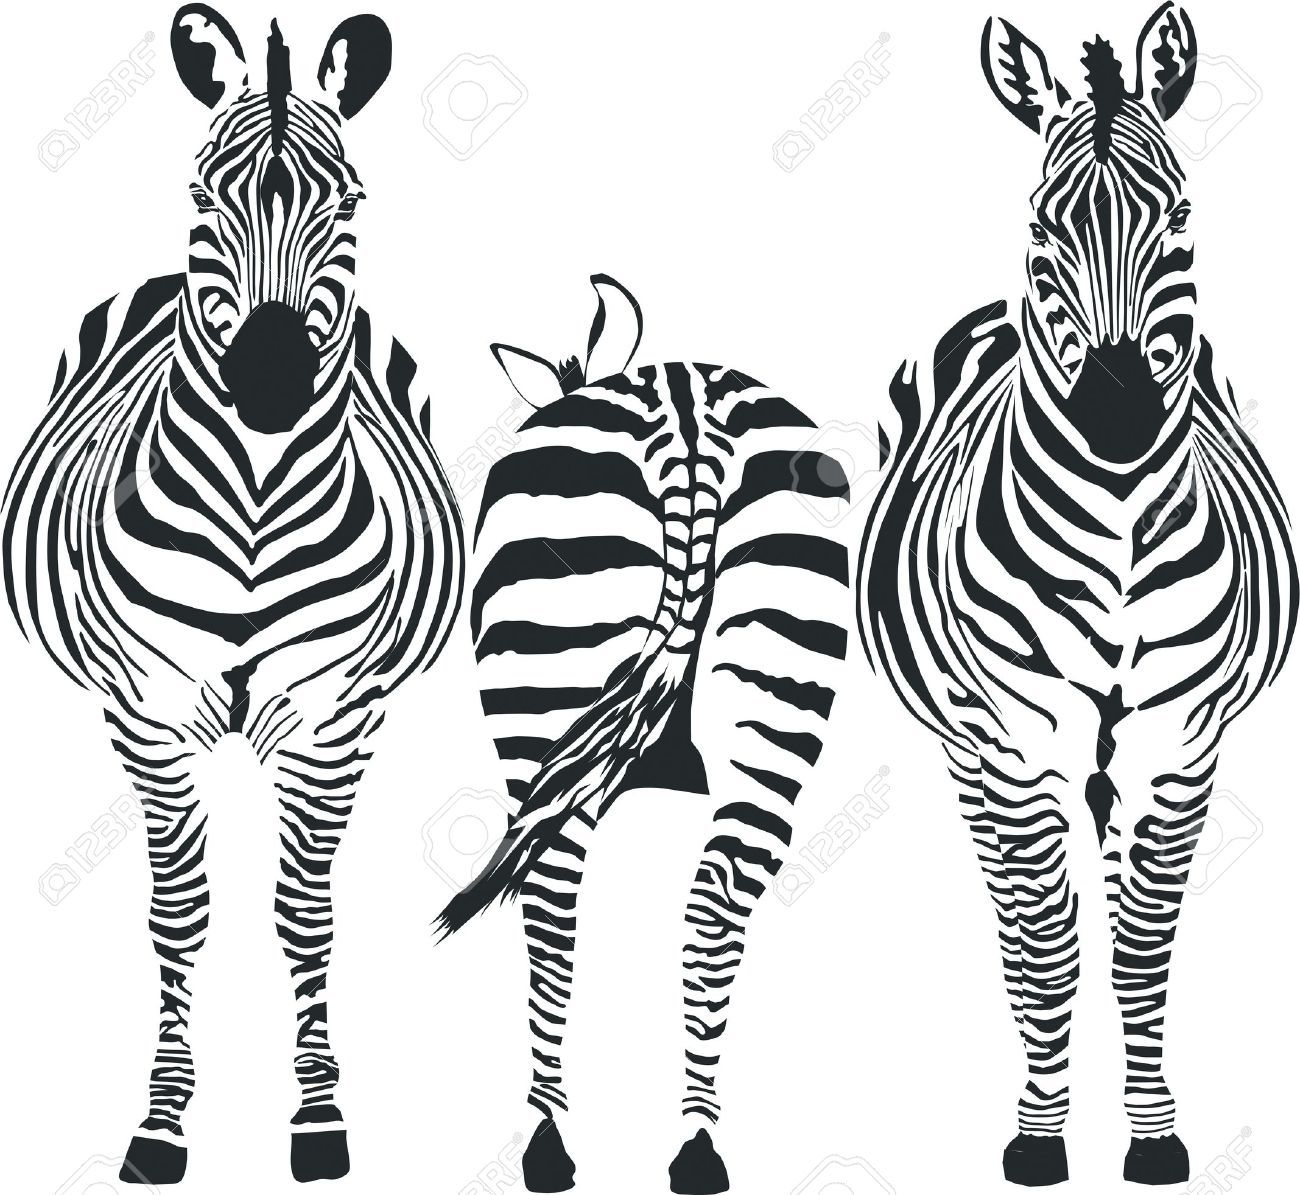 clipart zebra three